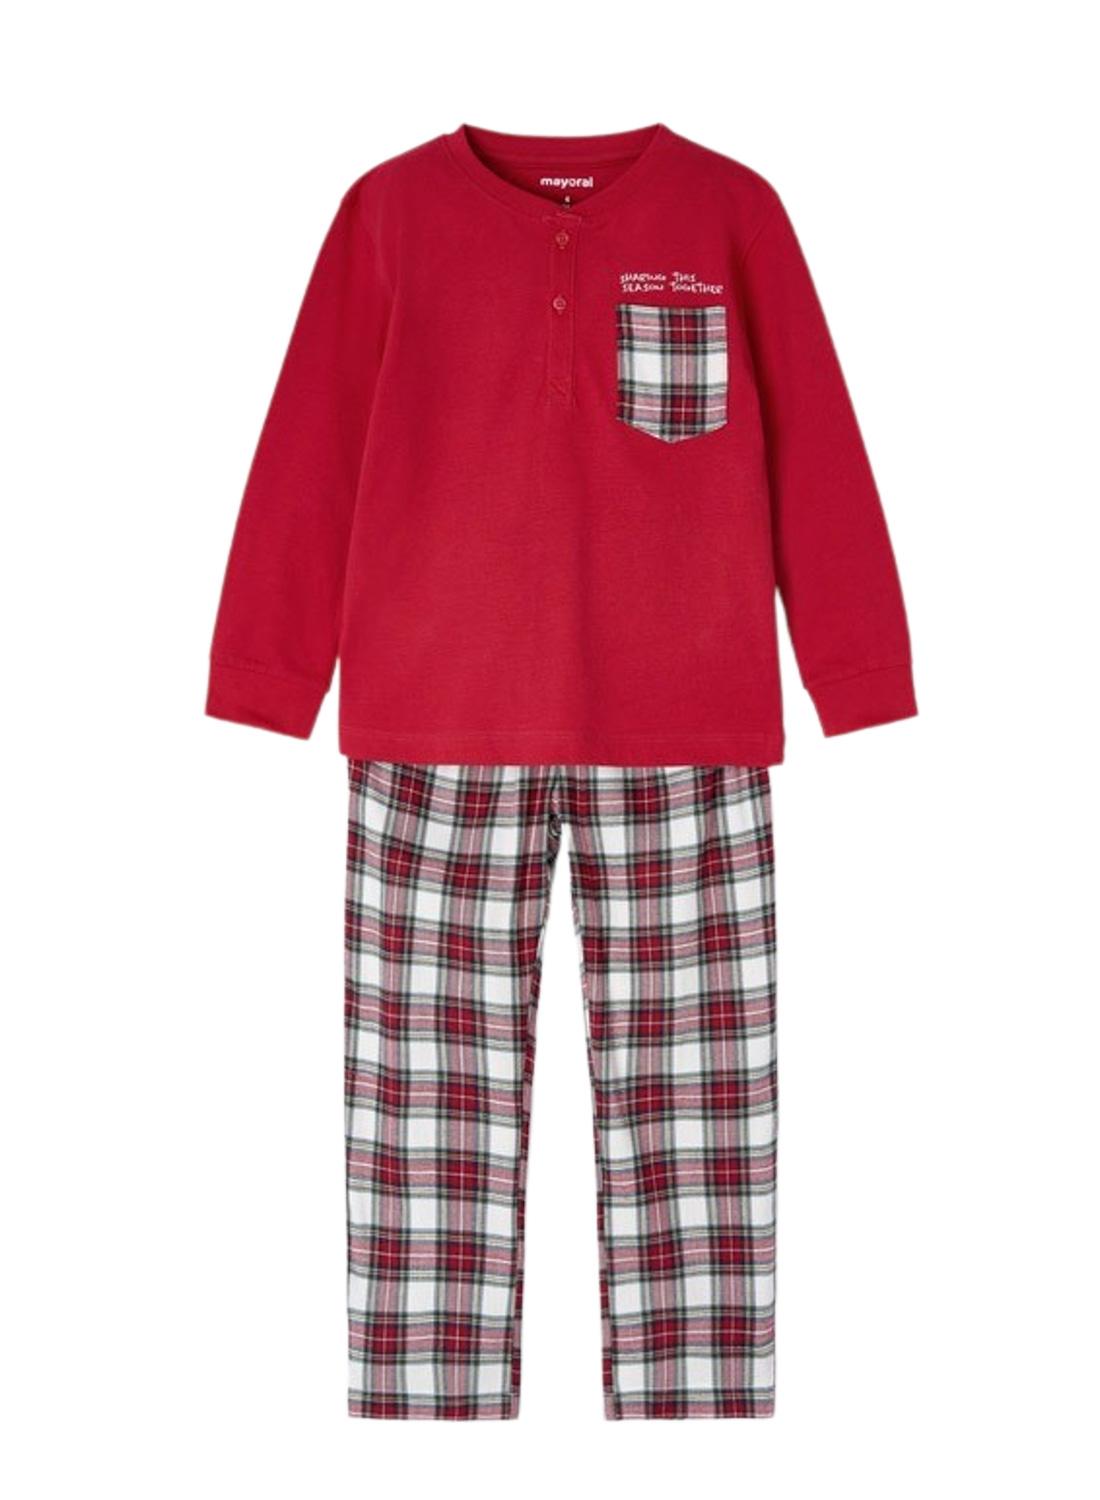 Pijama niño osito rojo:MAYORAL